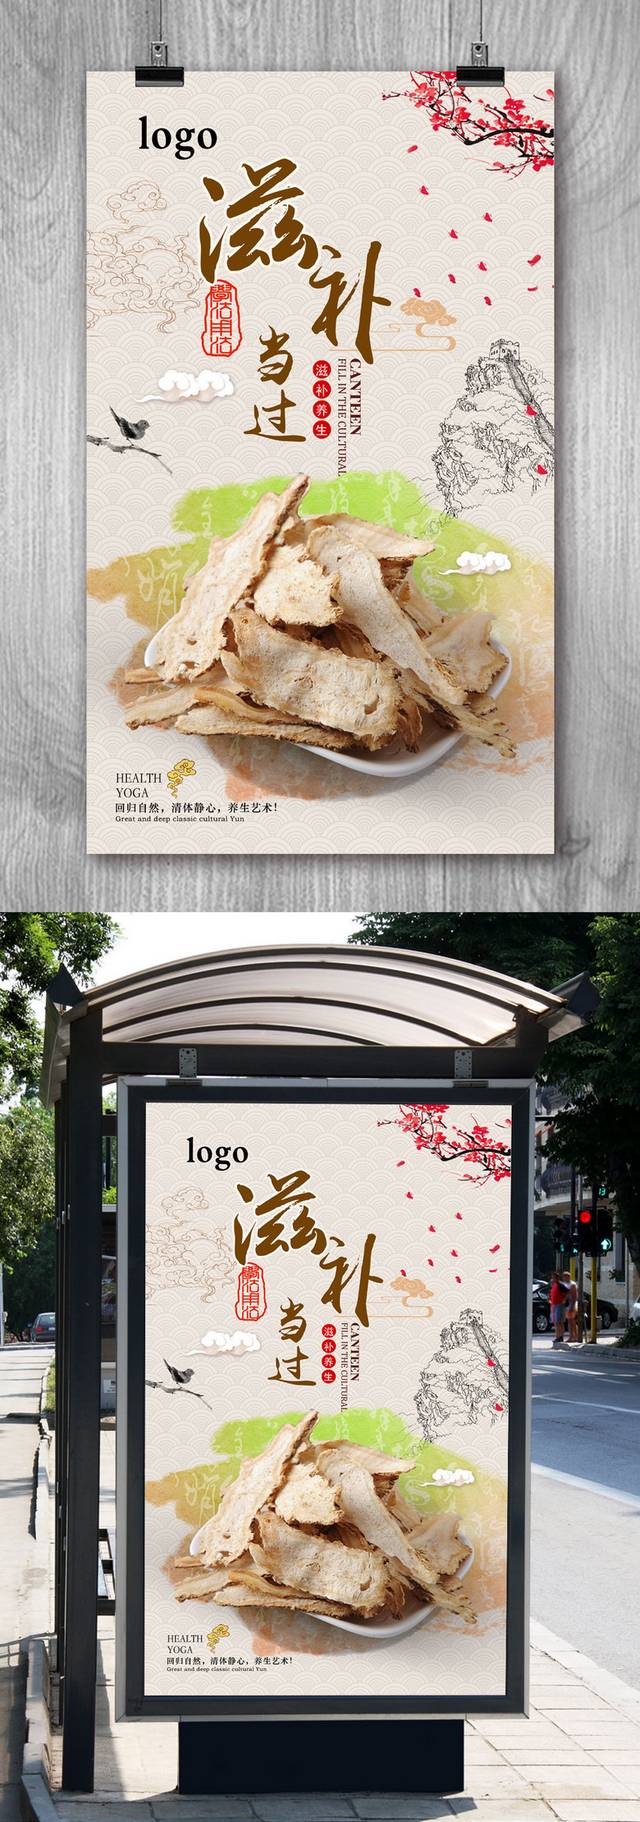 中国风古典当归保健品宣传海报设计